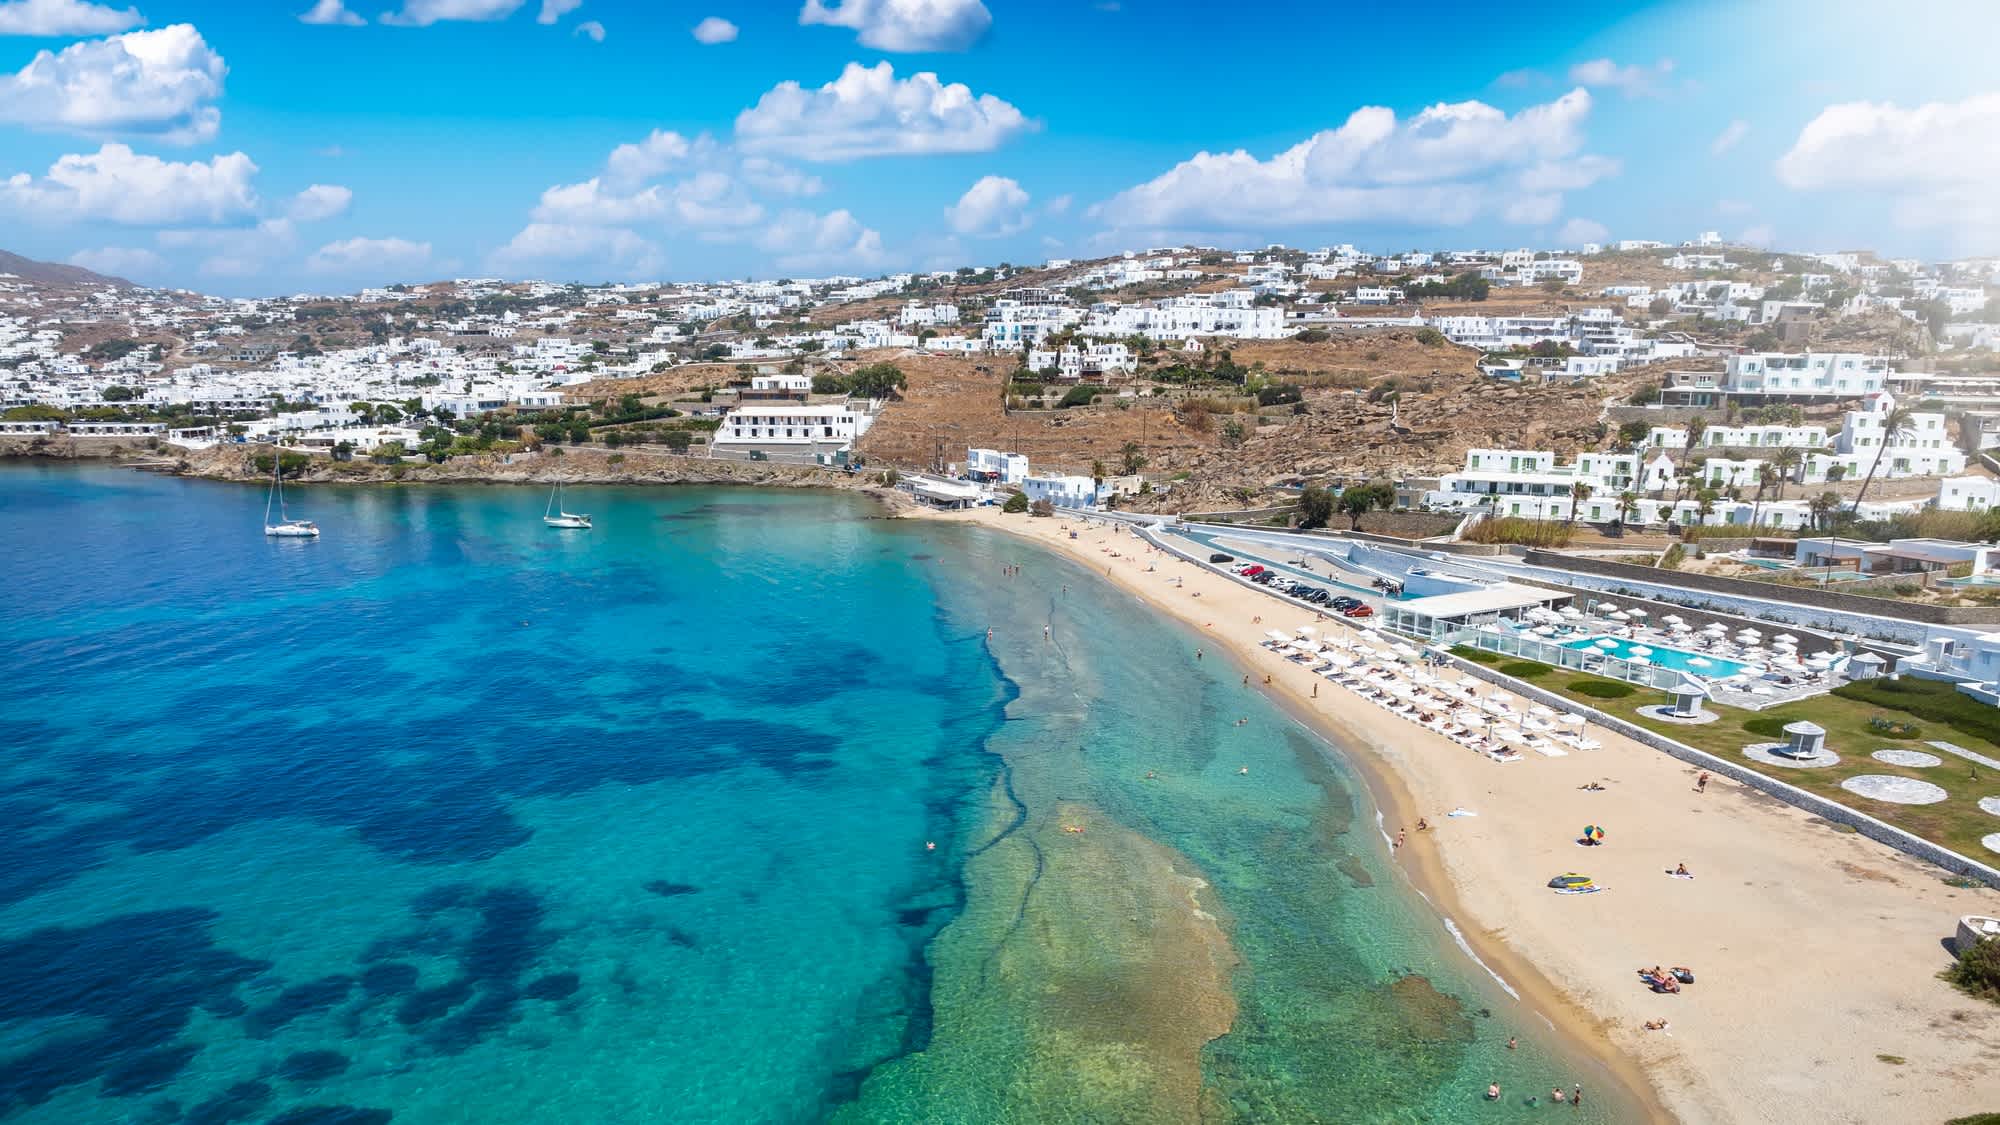 Der Strand von Megali Ammos neben der Stadt Mykonos, Griechenland.

